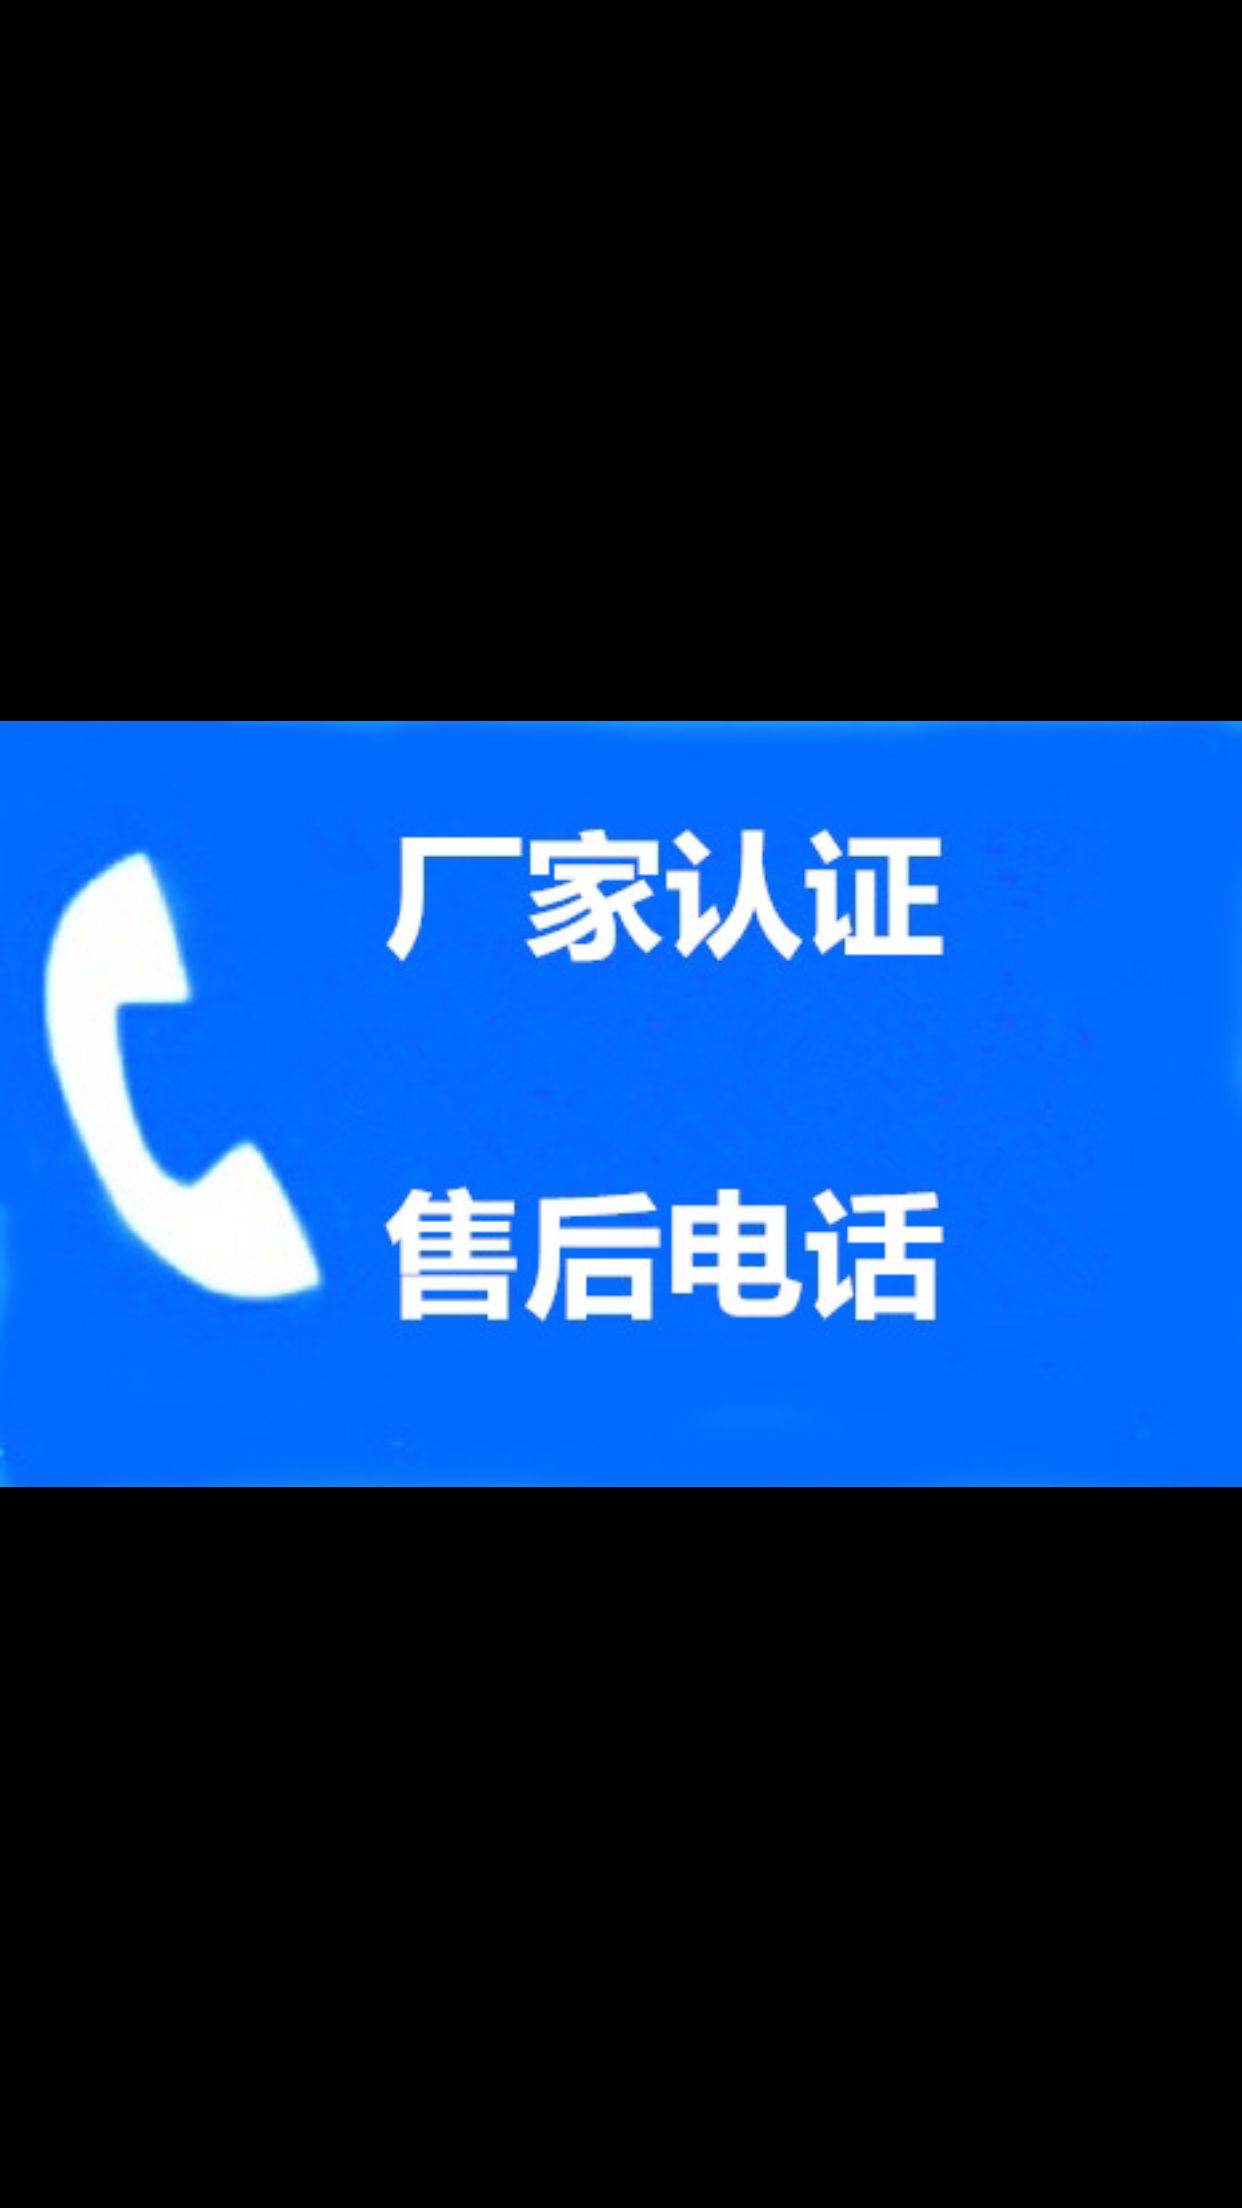 锦江区东光高木热水器故障维修（厂家联保）统一故障受理中心4006661443